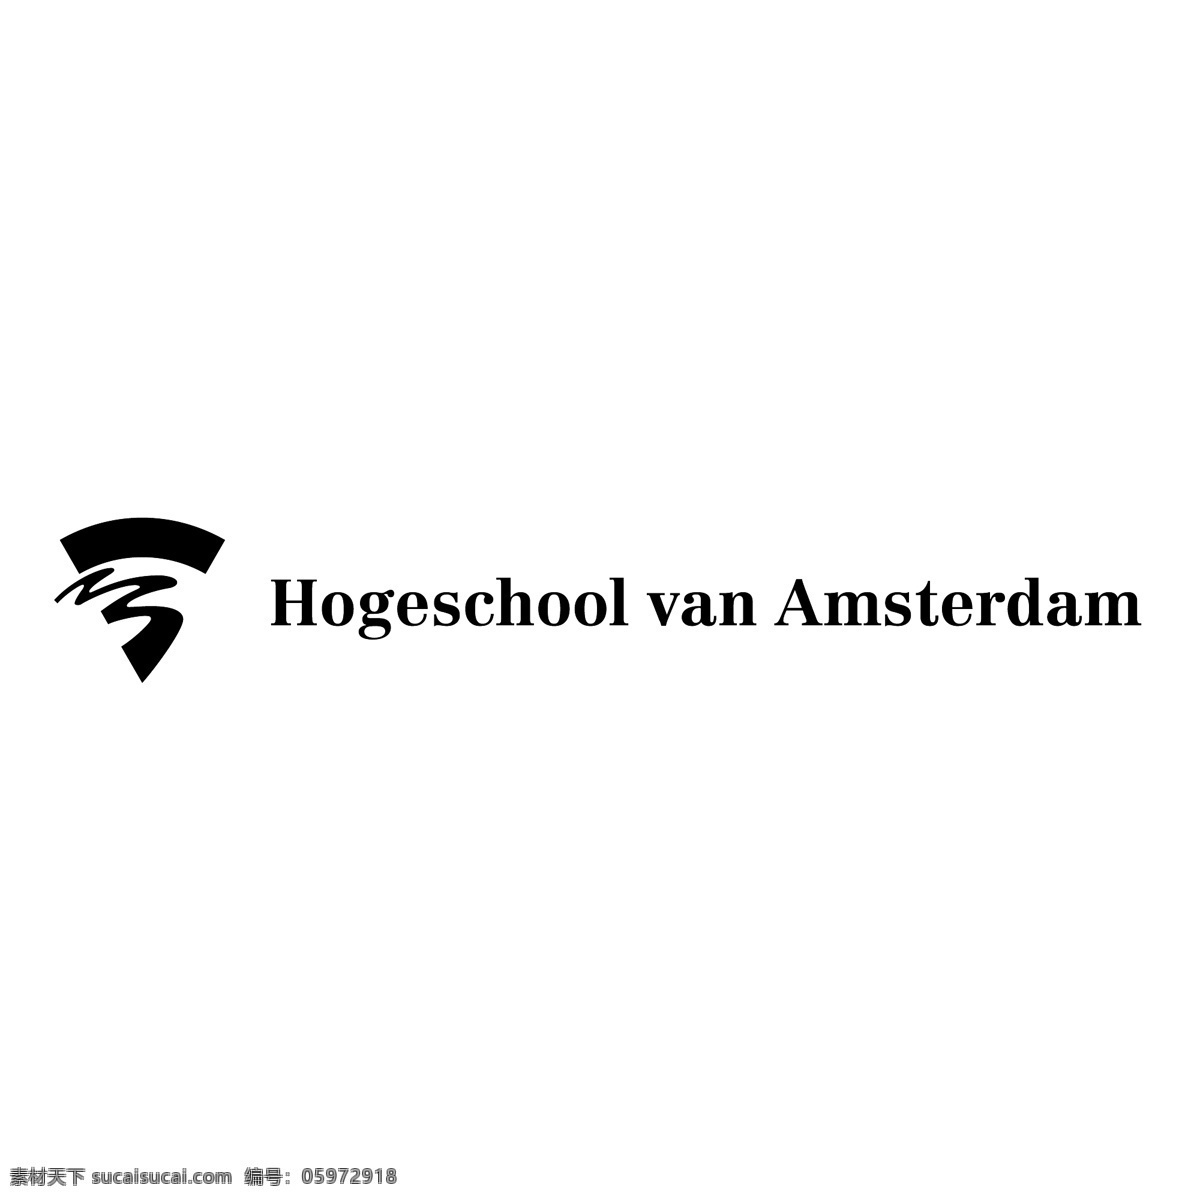 阿姆斯特丹 高等 专业 大学 面包车 应用 应用的面包车 矢量 图形 范 向量 免费 范向量 范向量图像 矢量免费车 范向量下载 自由车 建筑家居